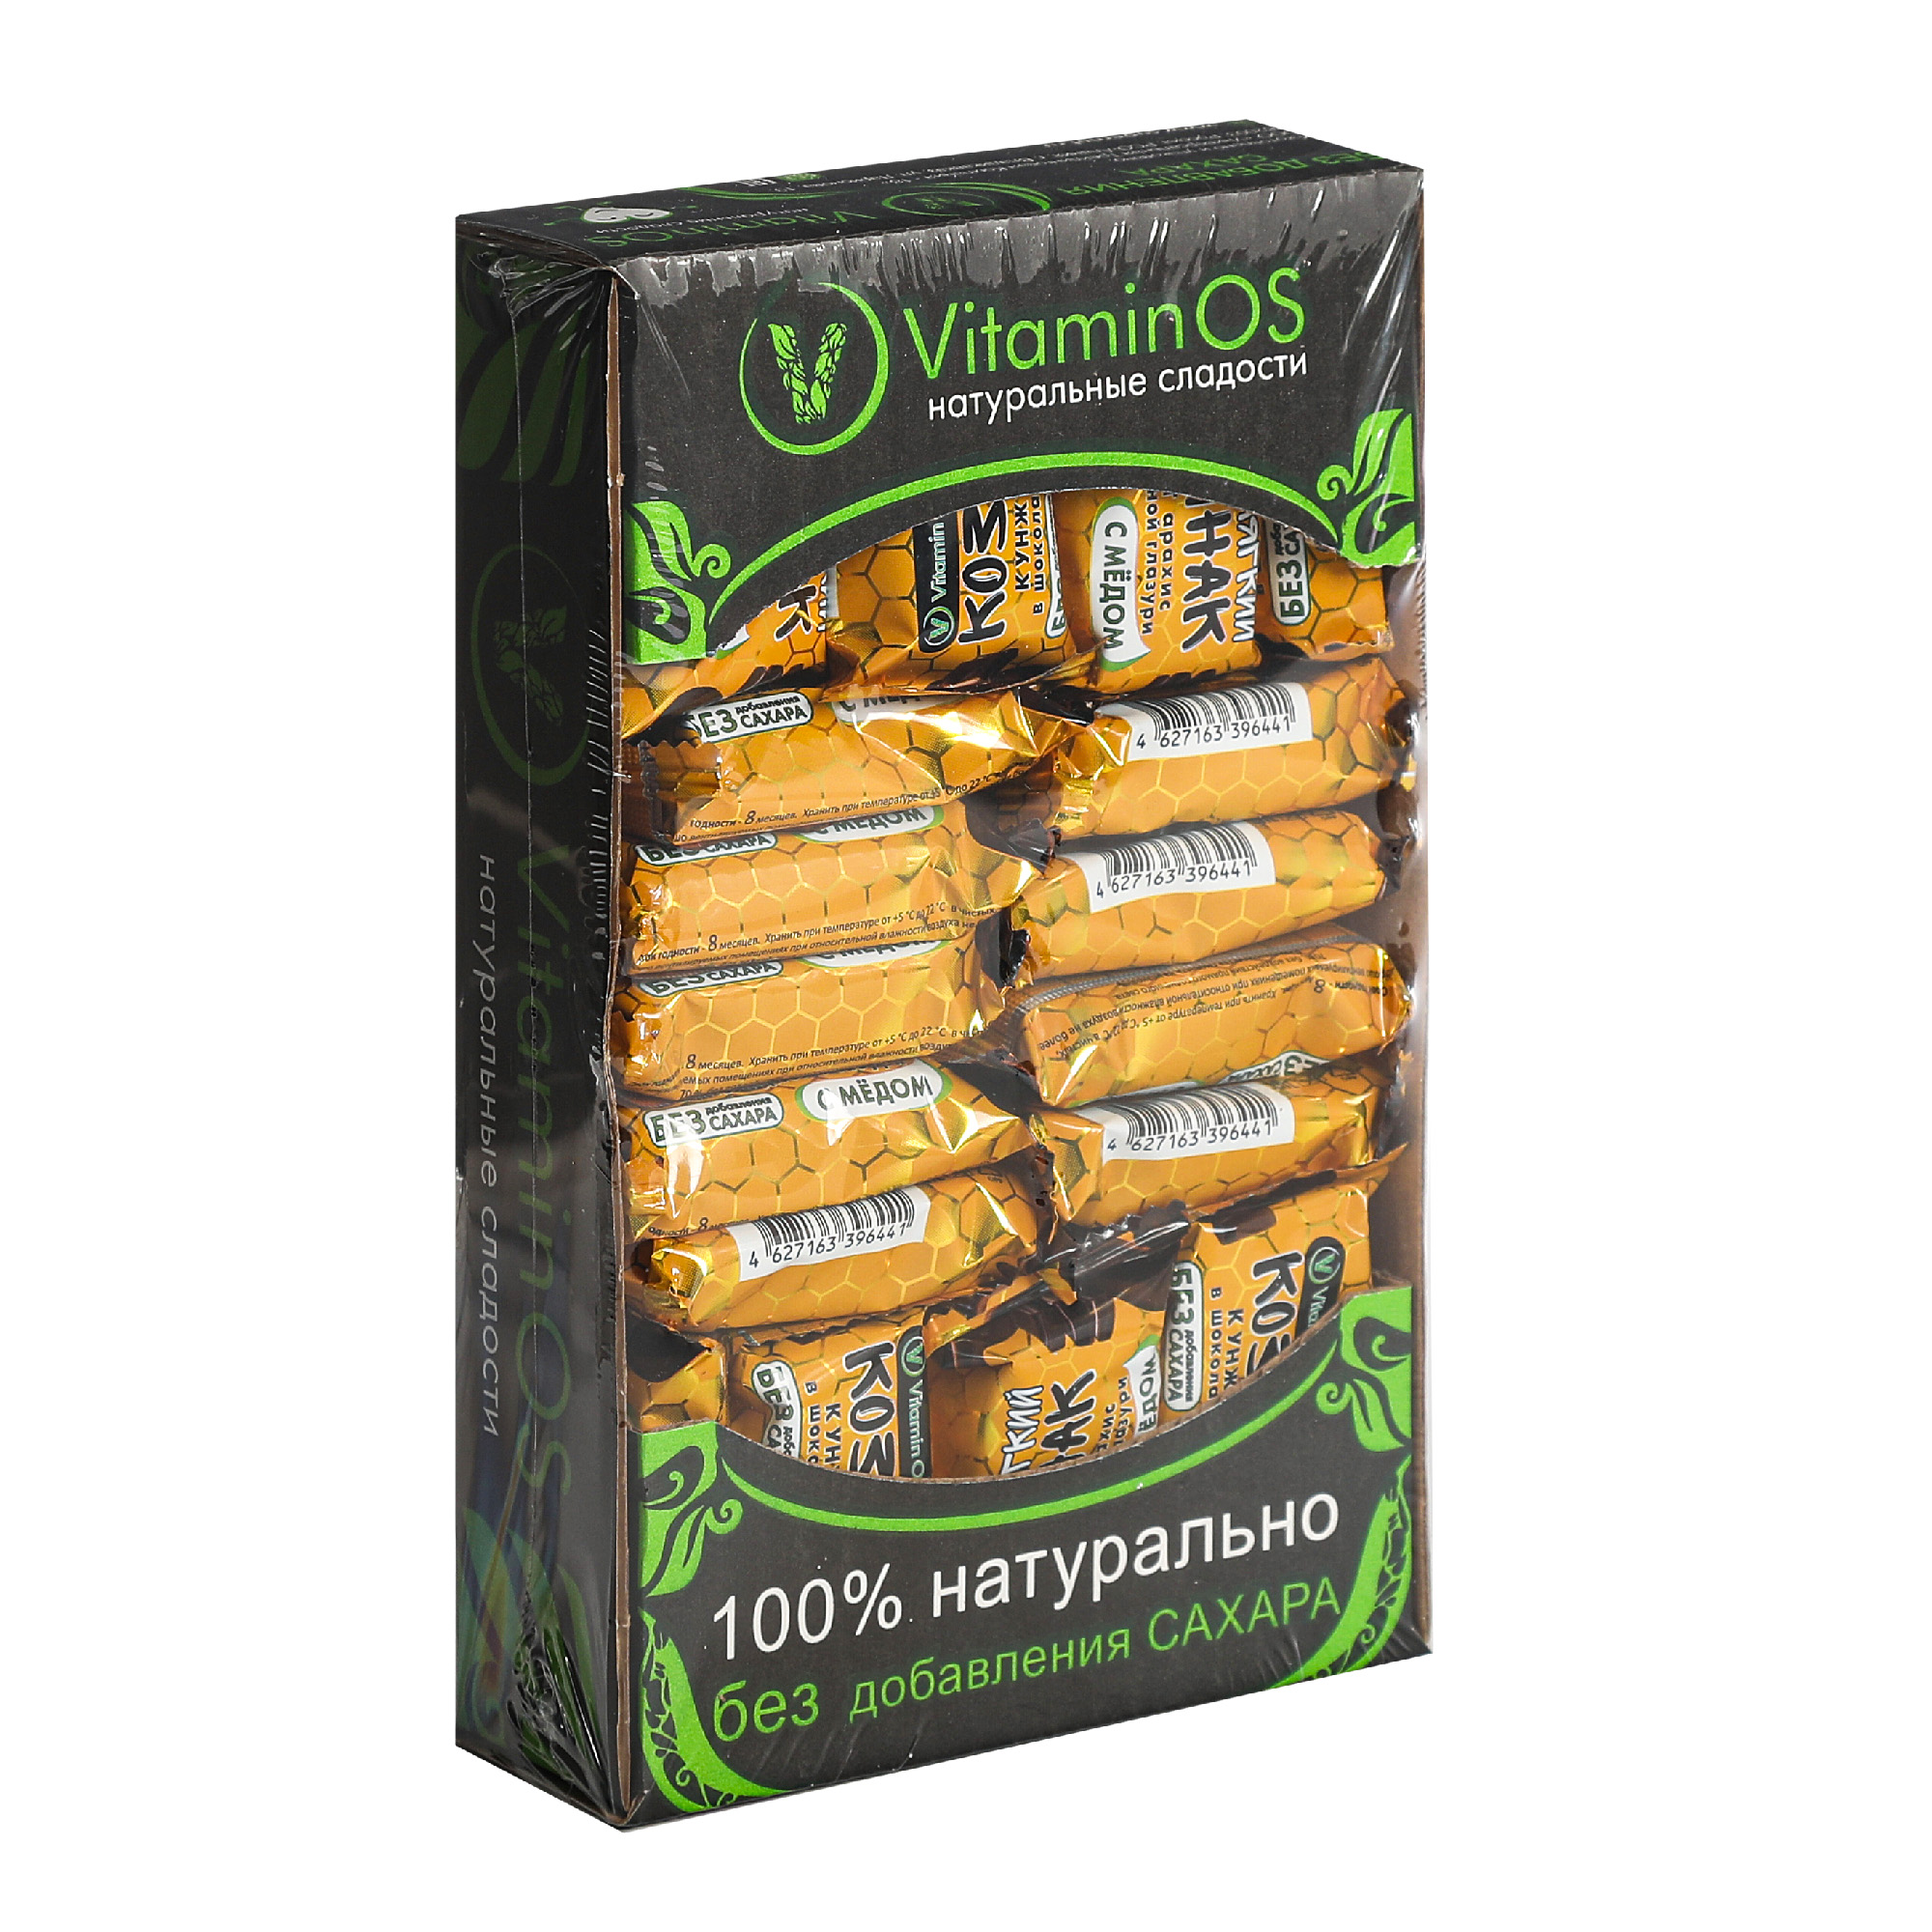 Козинаки мягкие Vitaminos арахис-кунжут с шоколадной глазурью, 400 г арахис bio market жареный соленый 130 г